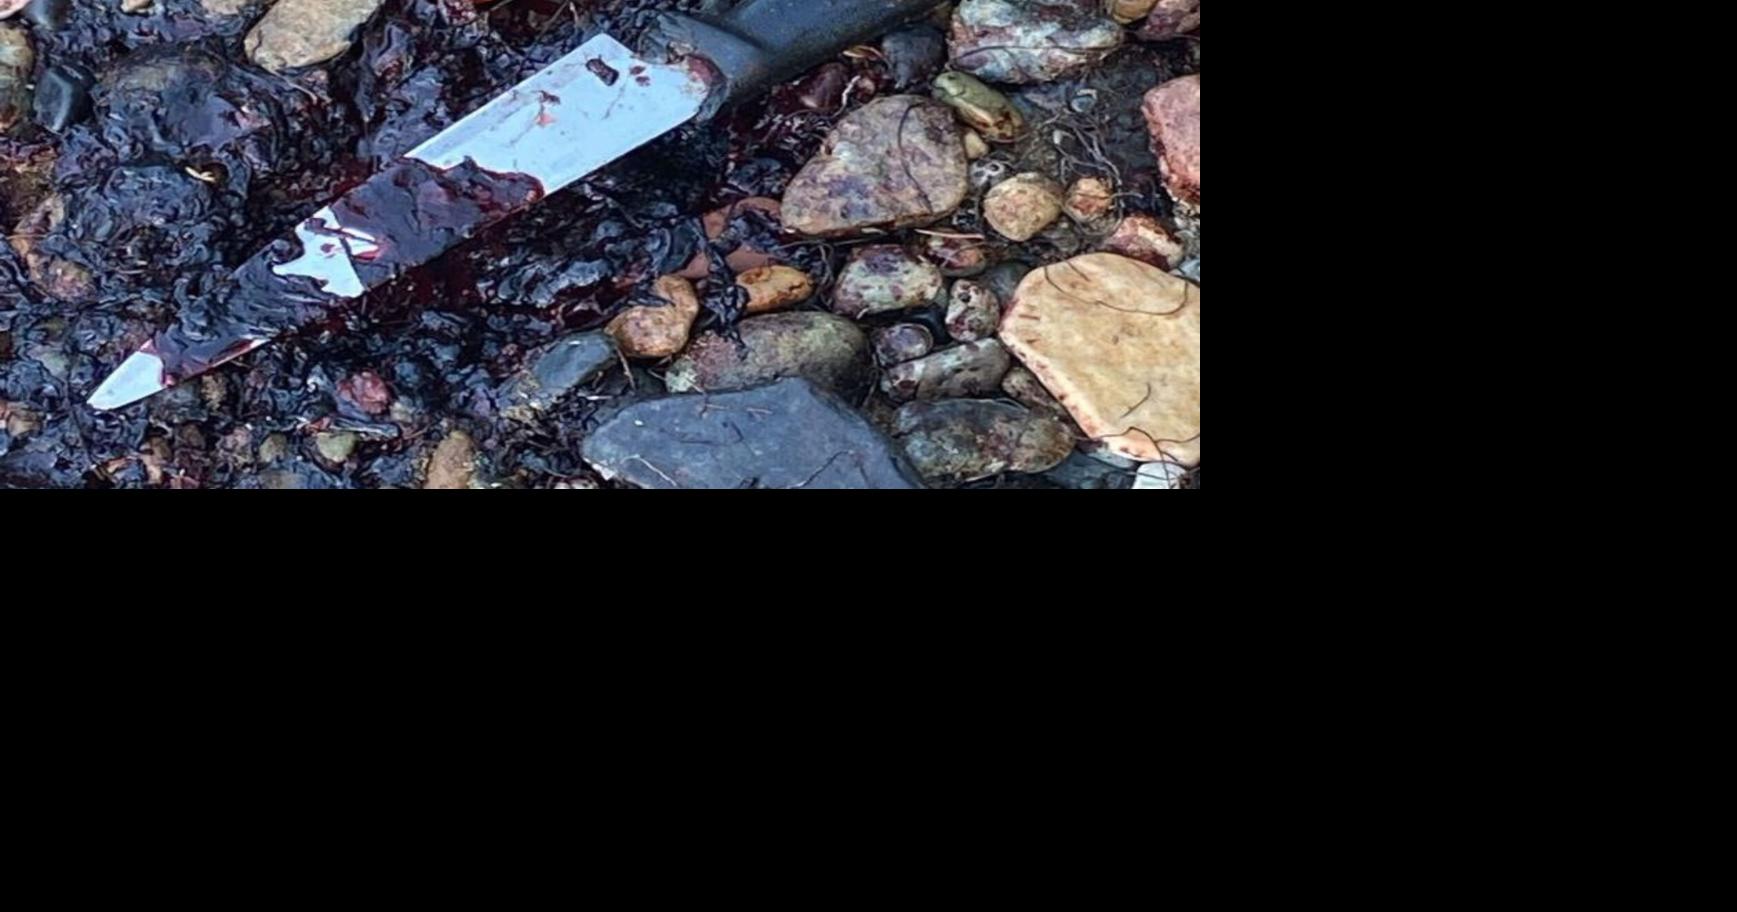 Dead turtle present in Guayama |  Agencies